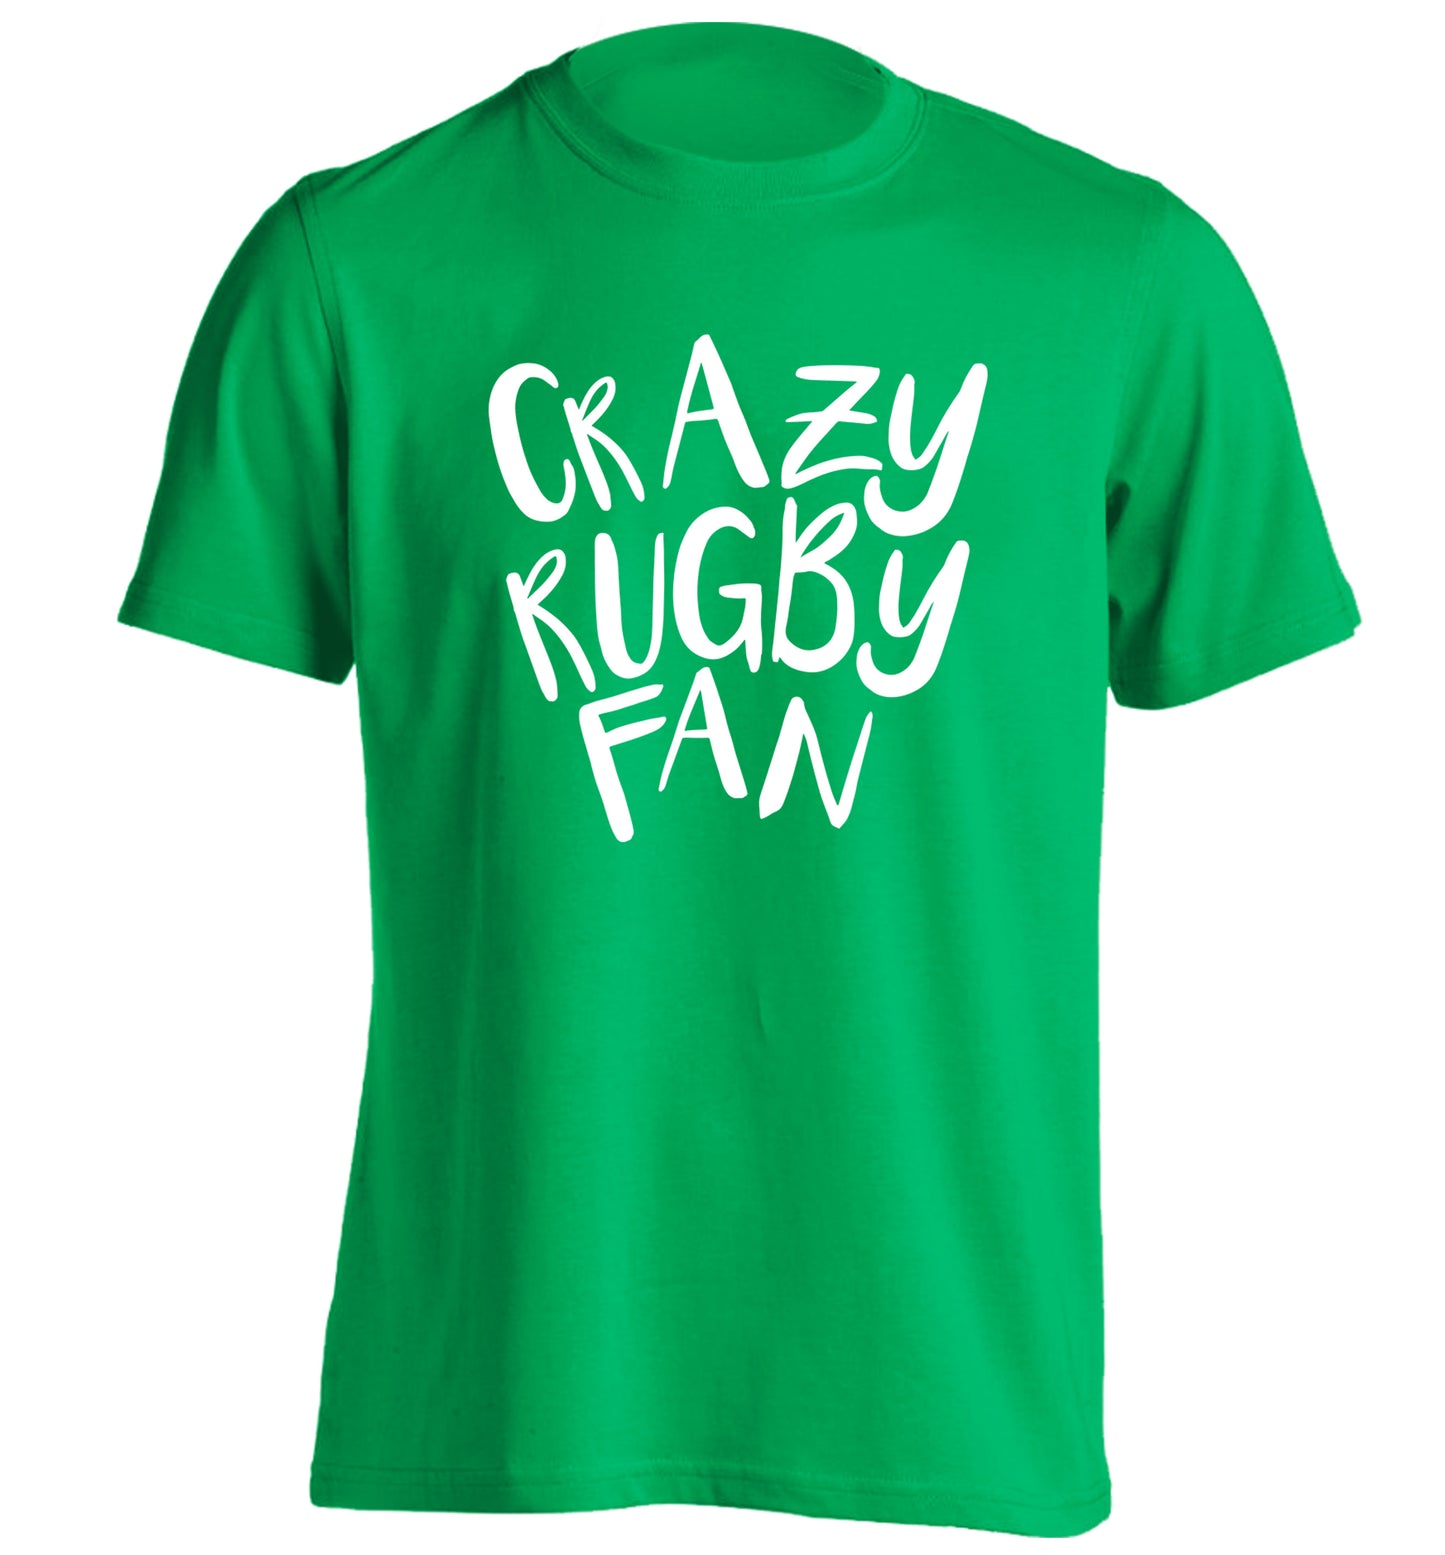 Crazy rugby fan adults unisex green Tshirt 2XL